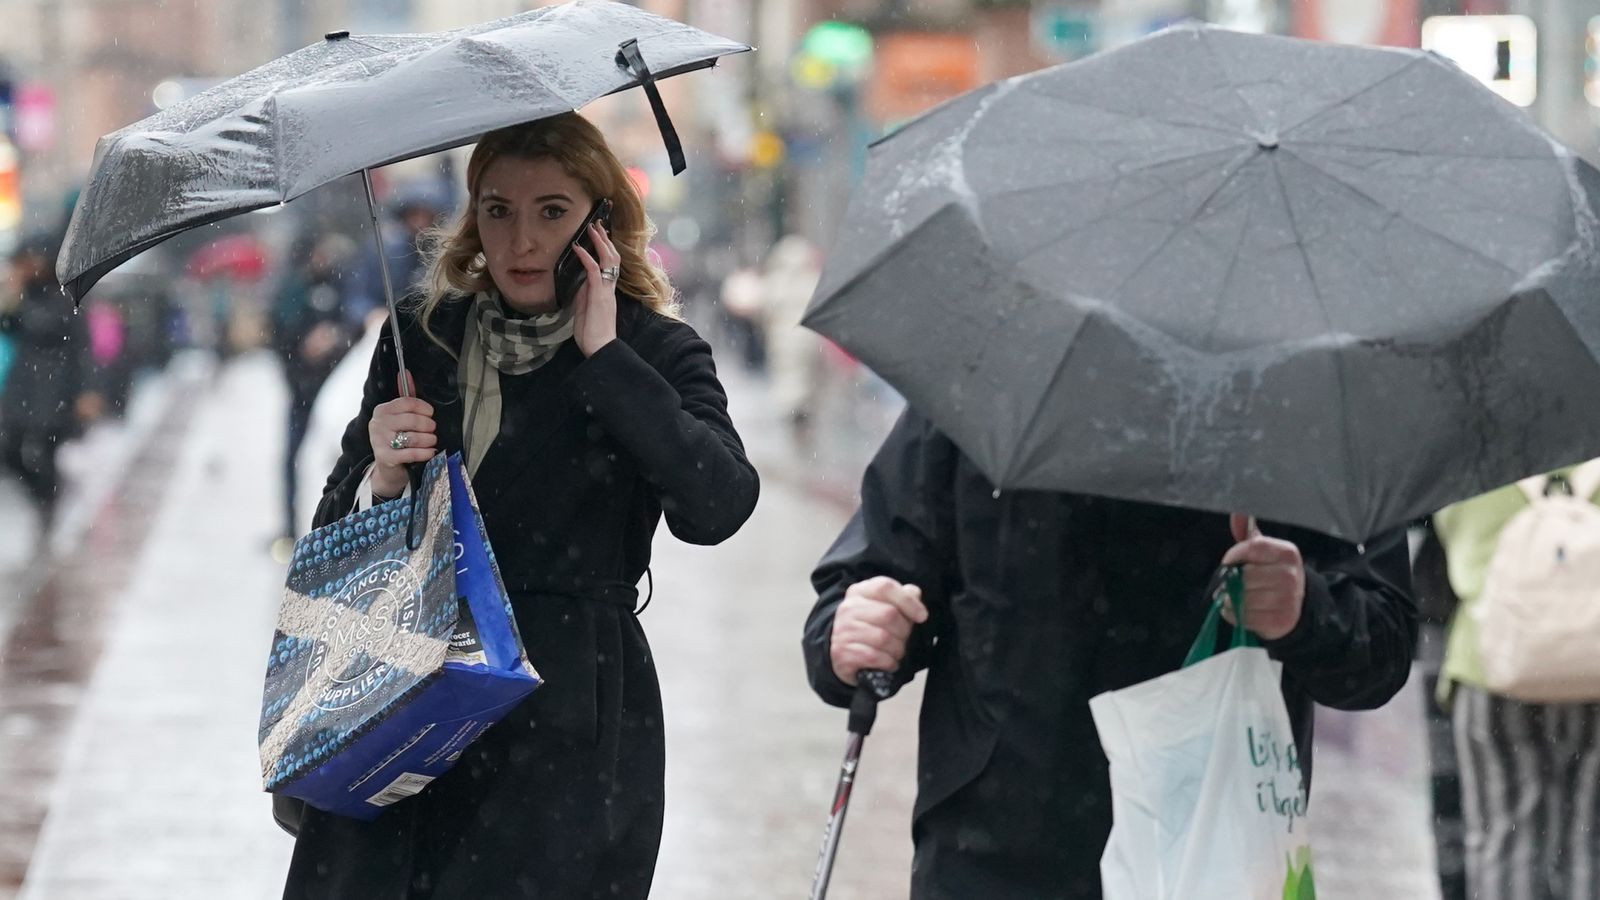 Времето в Обединеното кралство: Метеорологичната служба издава кехлибарено предупреждение за „опасност за живота“ в Шотландия, тъй като се очакват проливен дъжд, очакват се наводнения